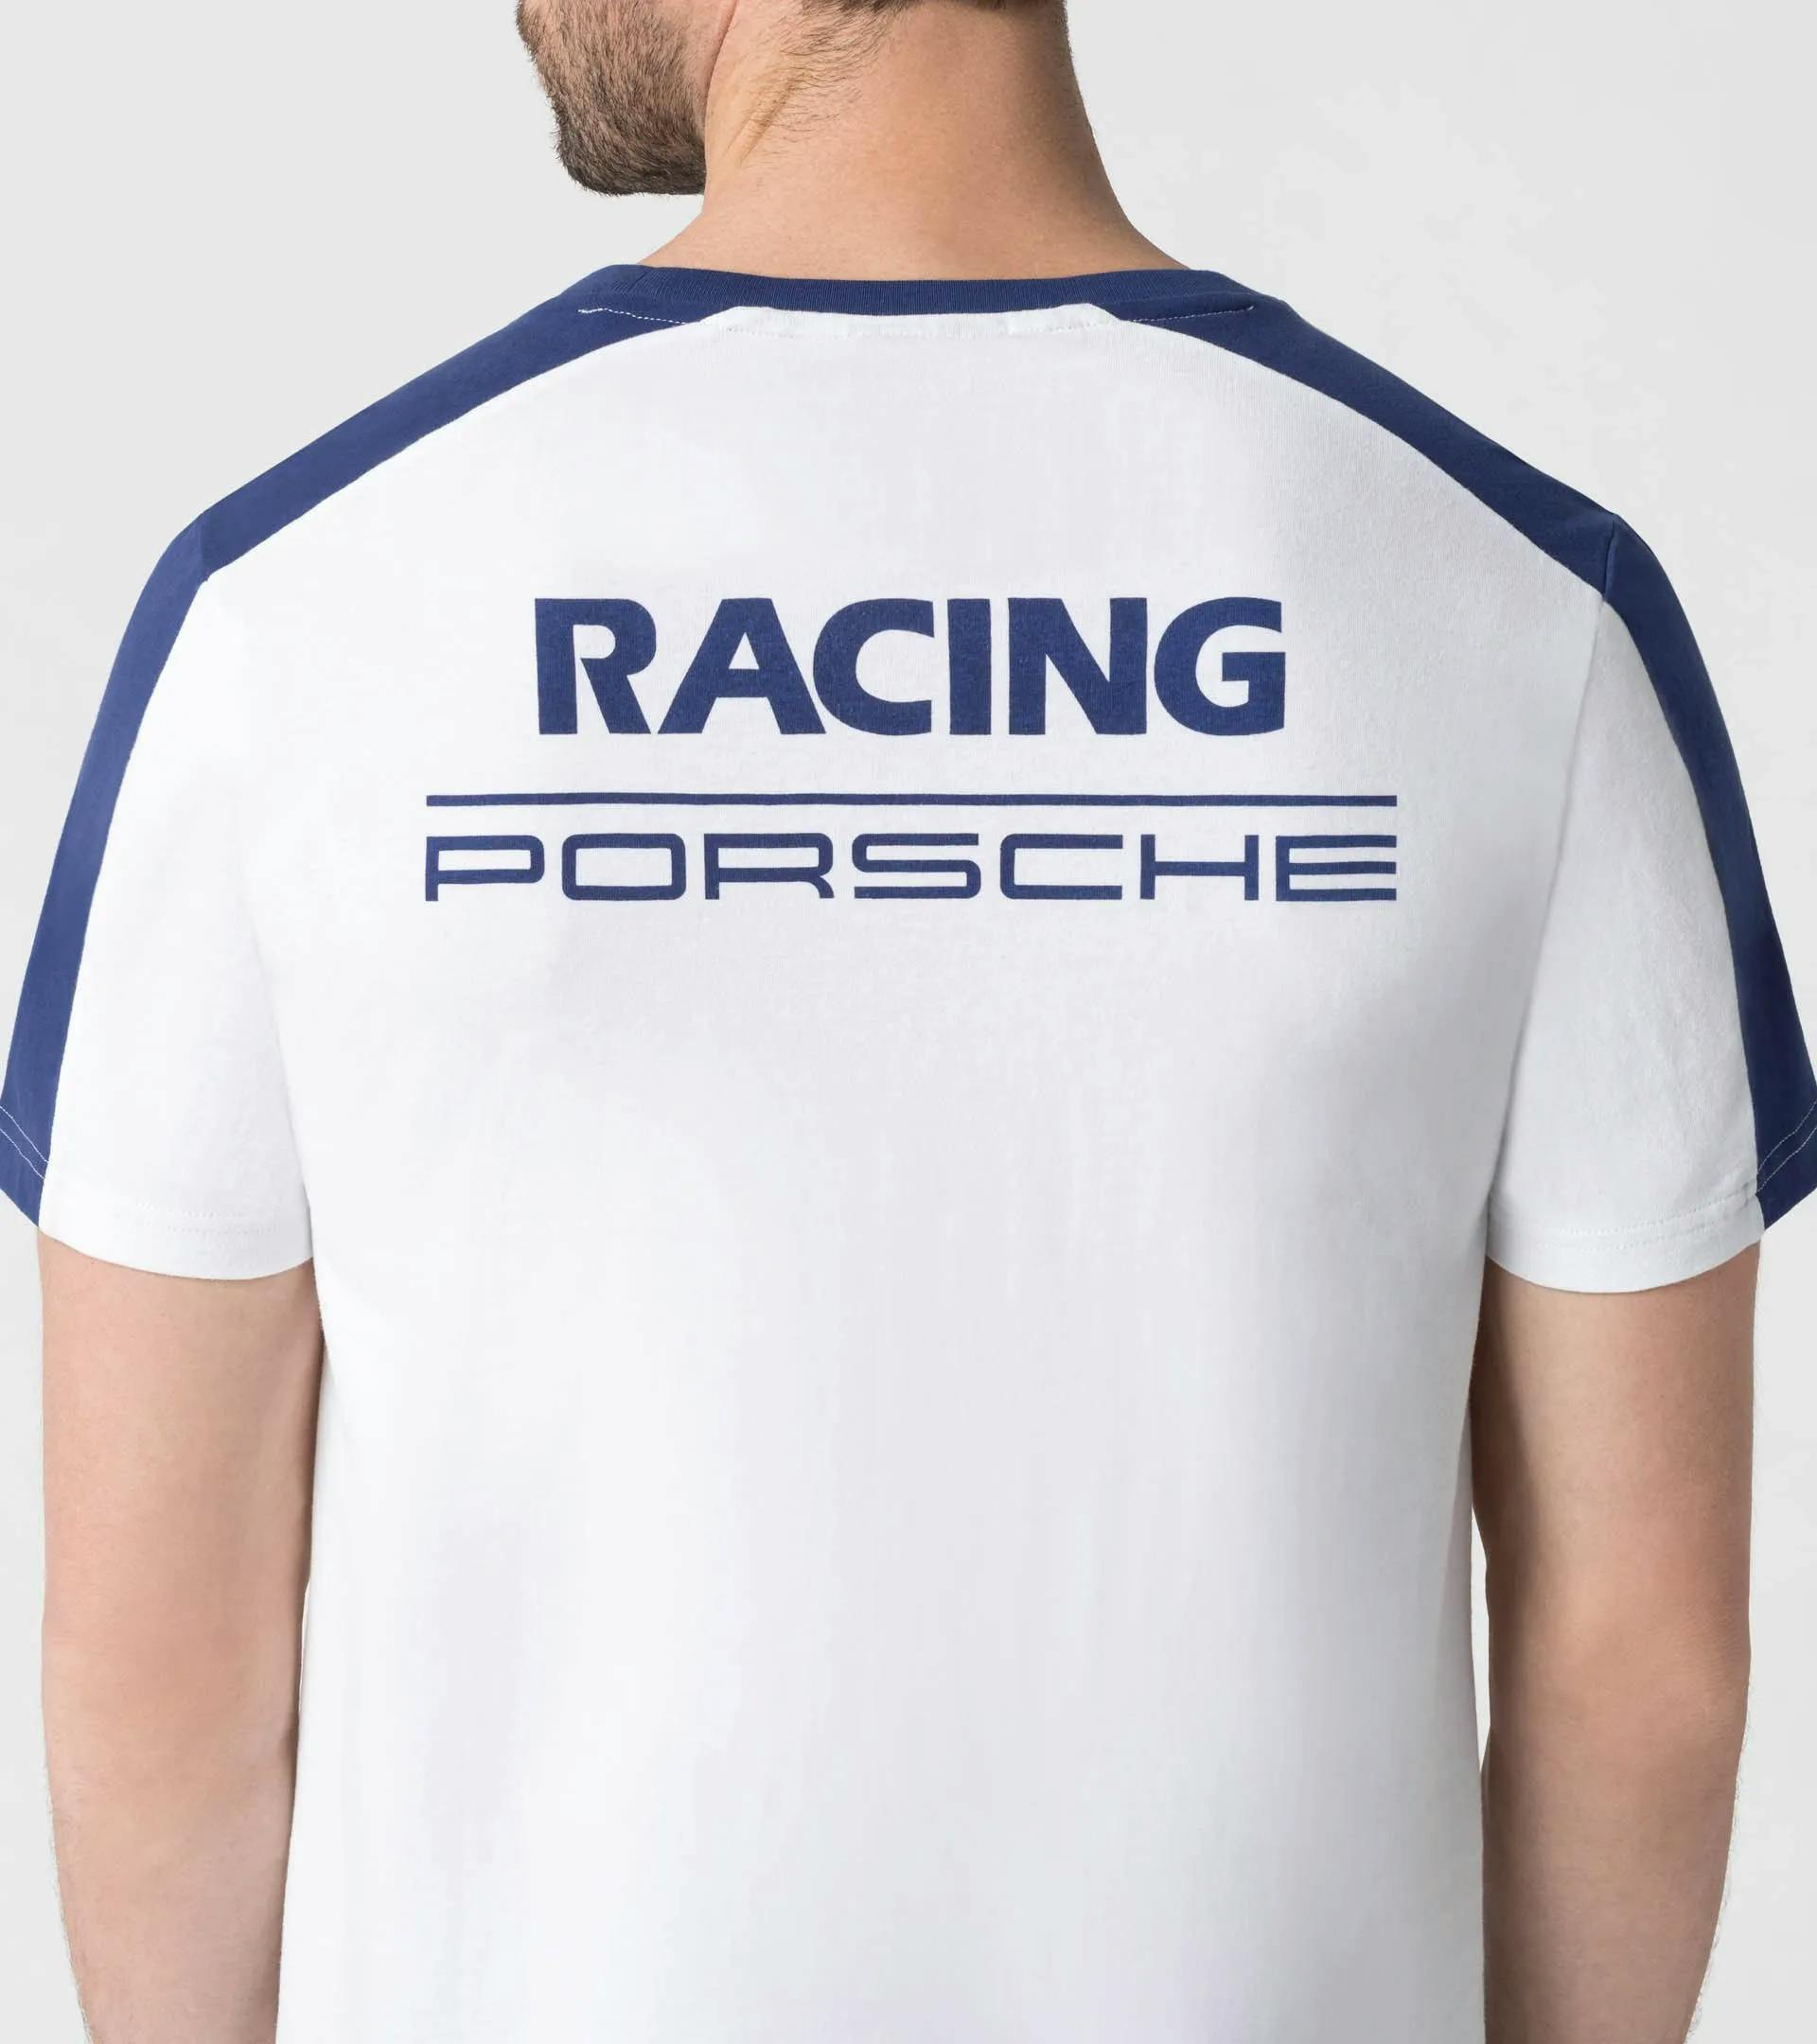 T-shirt – Racing